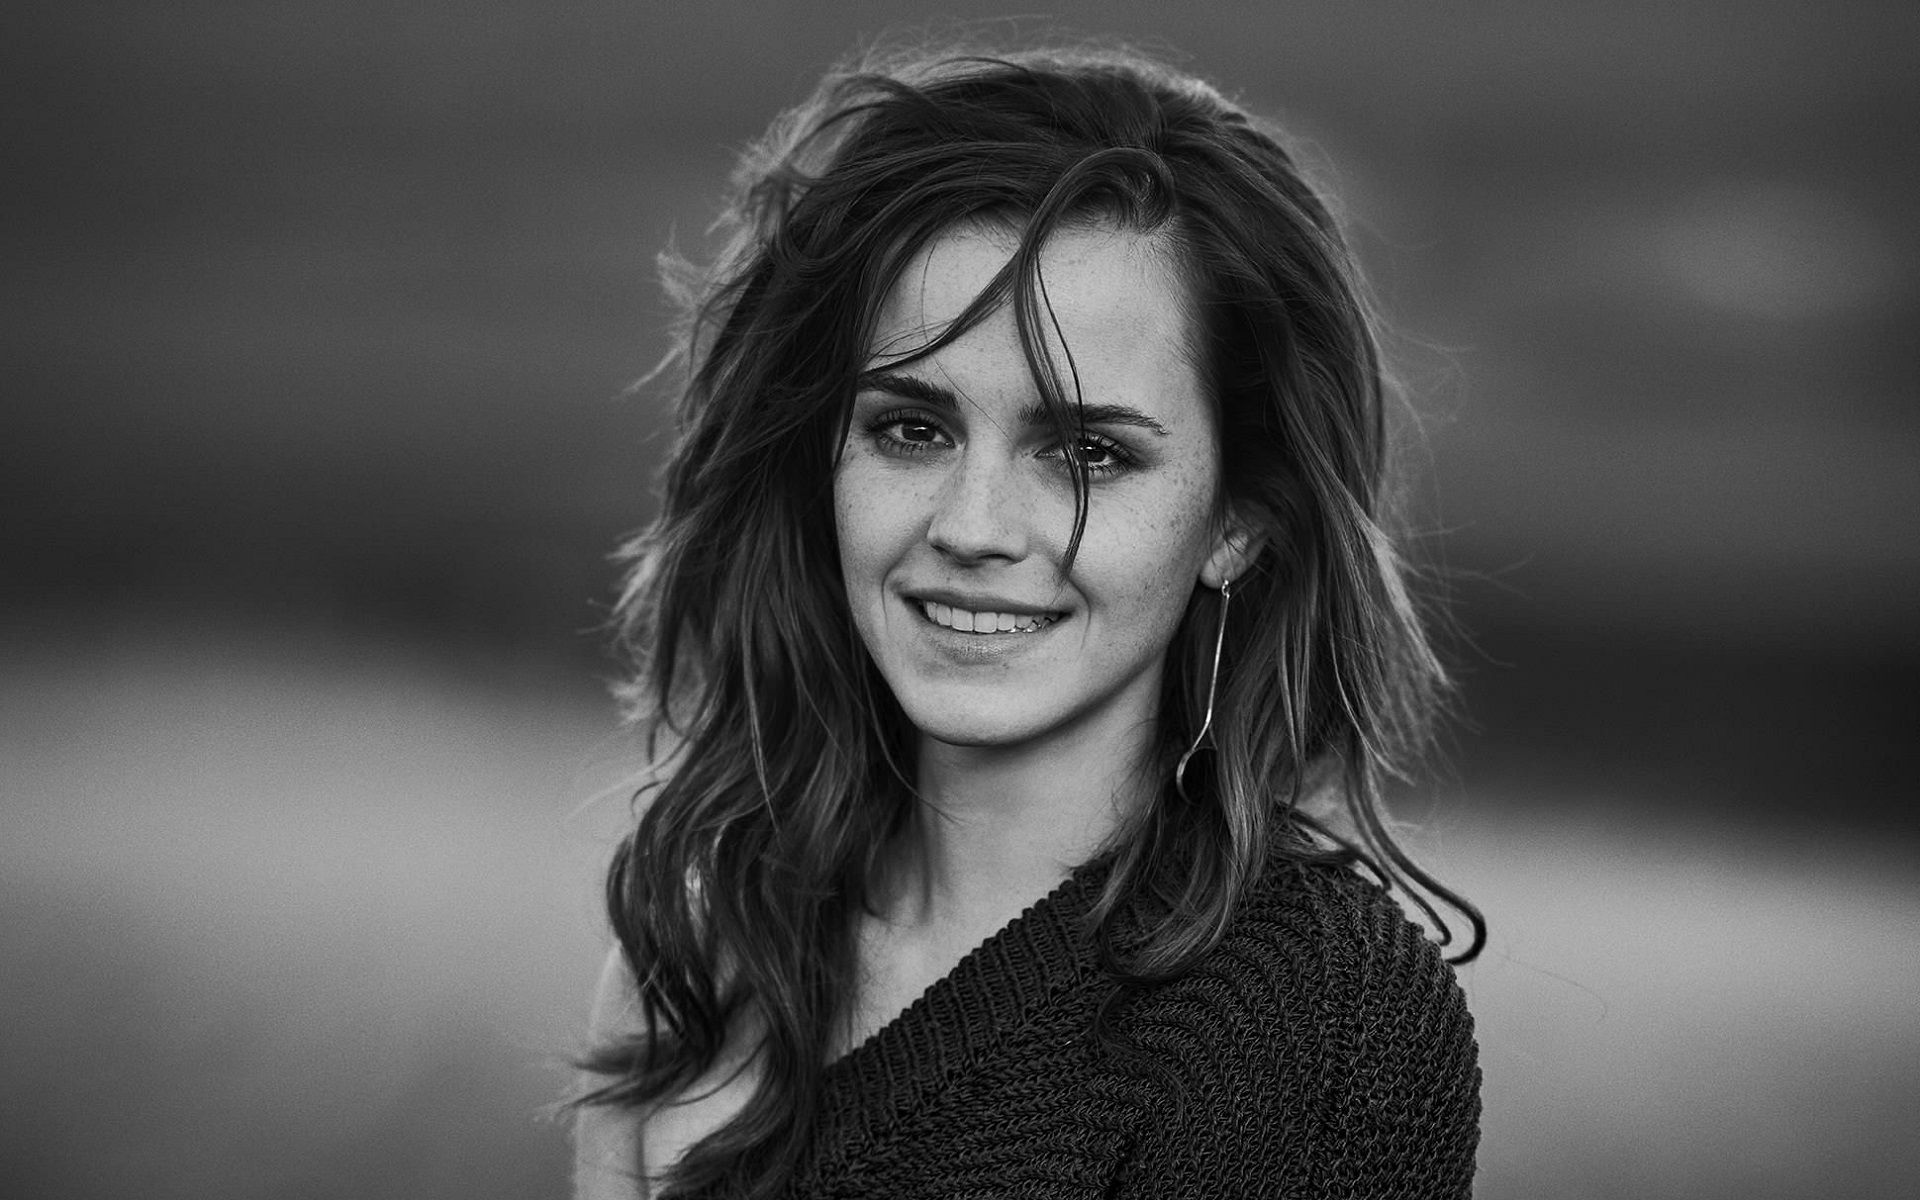 Fondos De Pantalla De Emma Watson Fondosmil